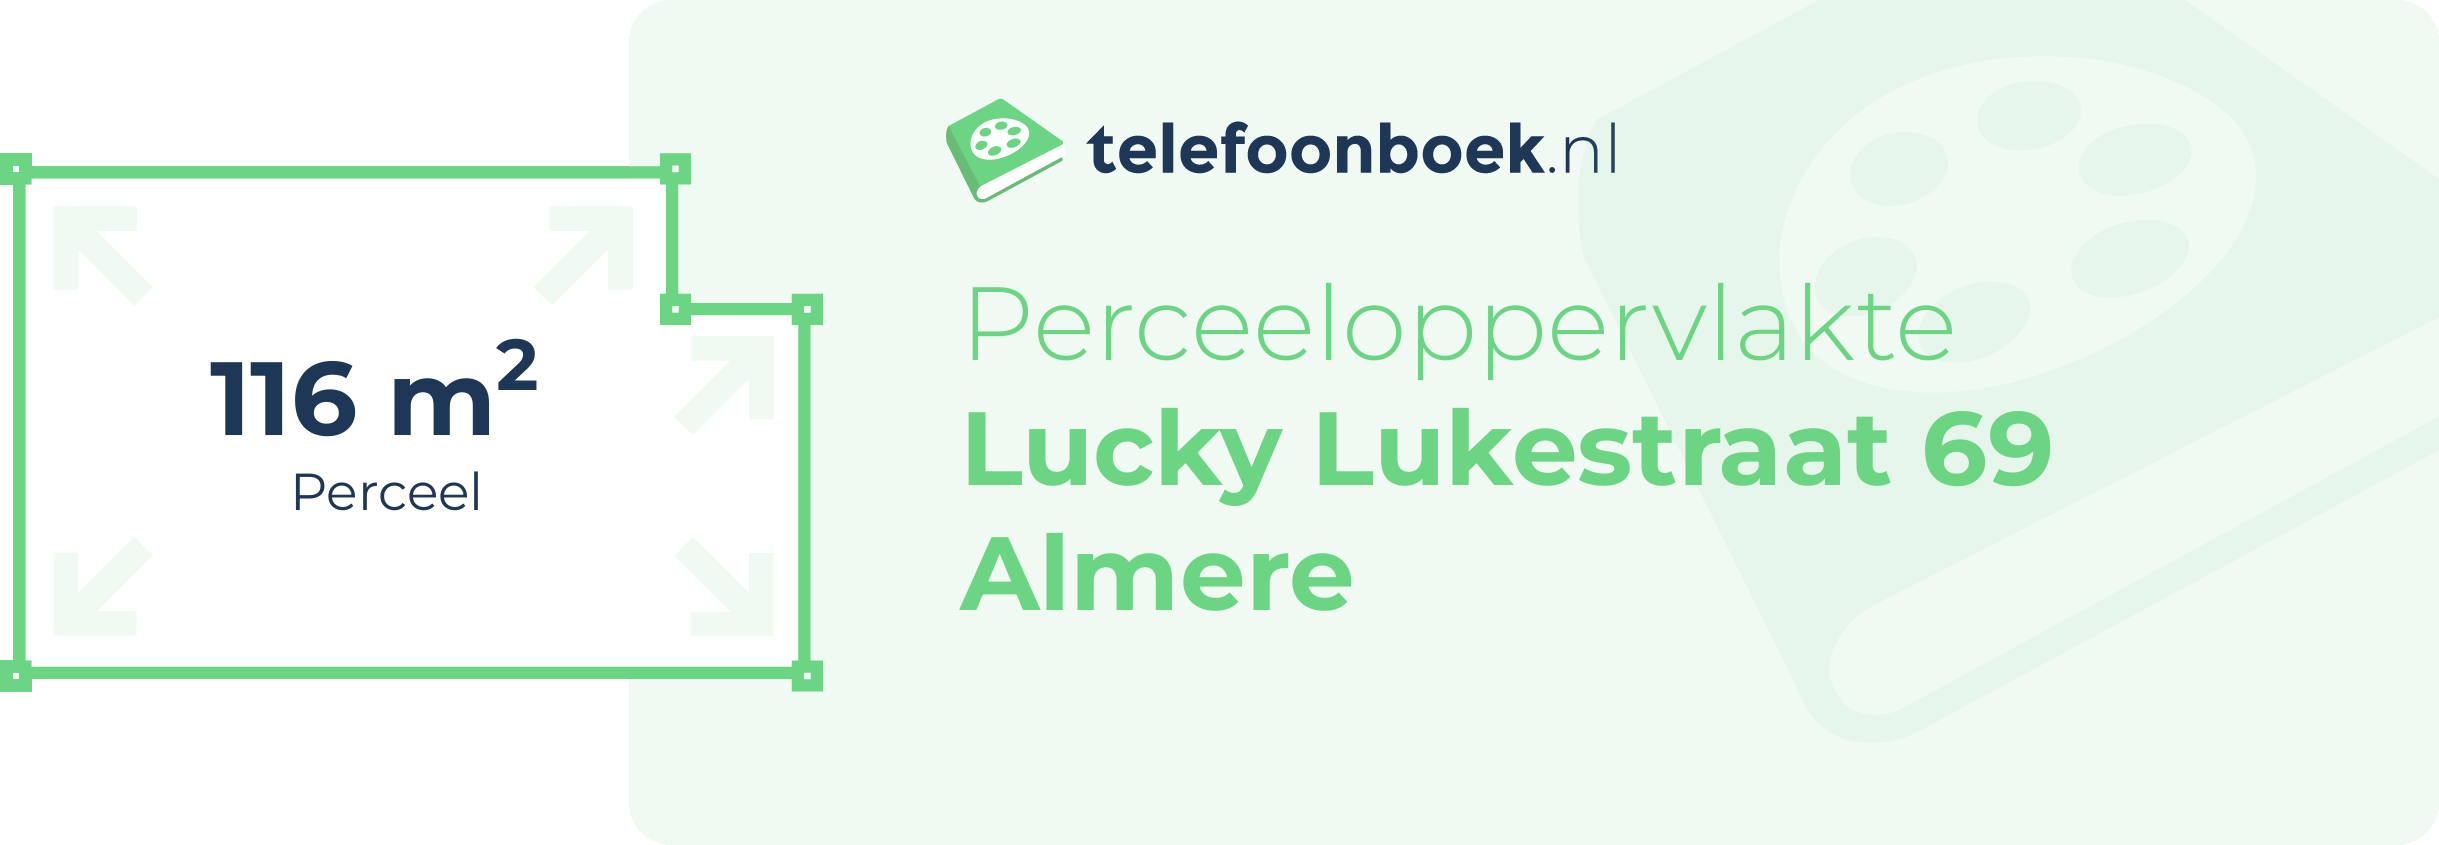 Perceeloppervlakte Lucky Lukestraat 69 Almere